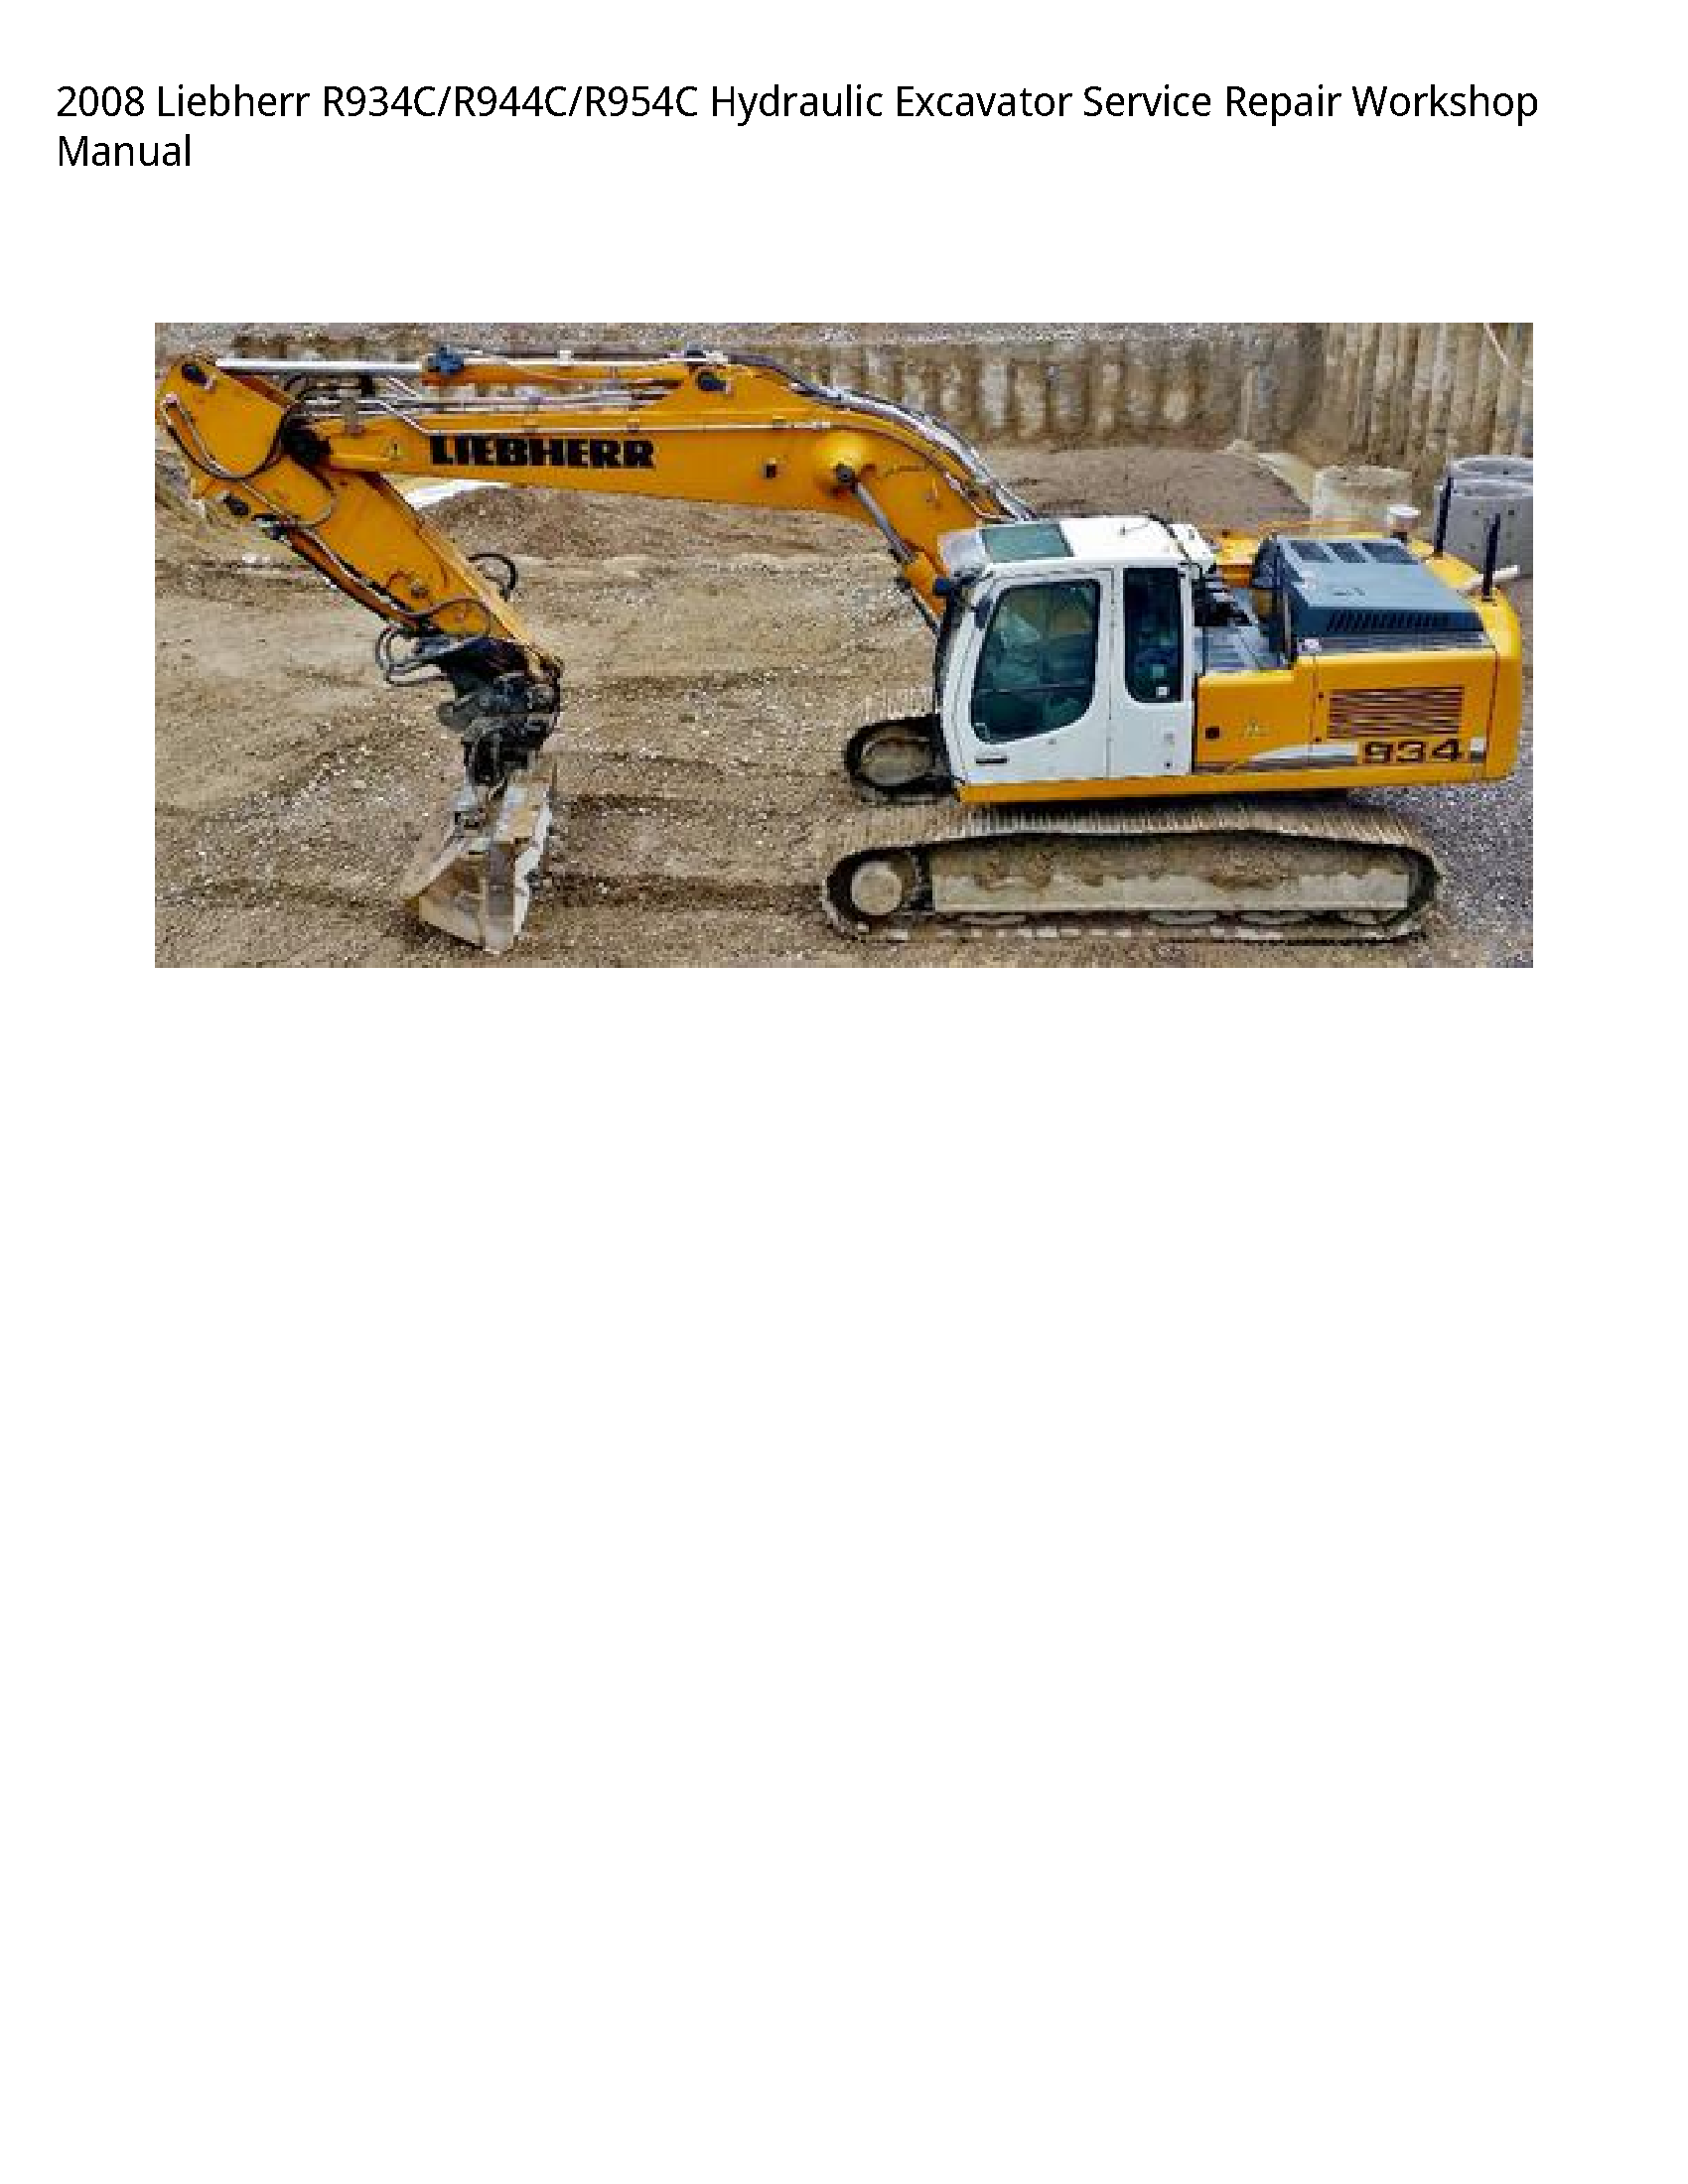 Liebherr R934C Hydraulic Excavator manual